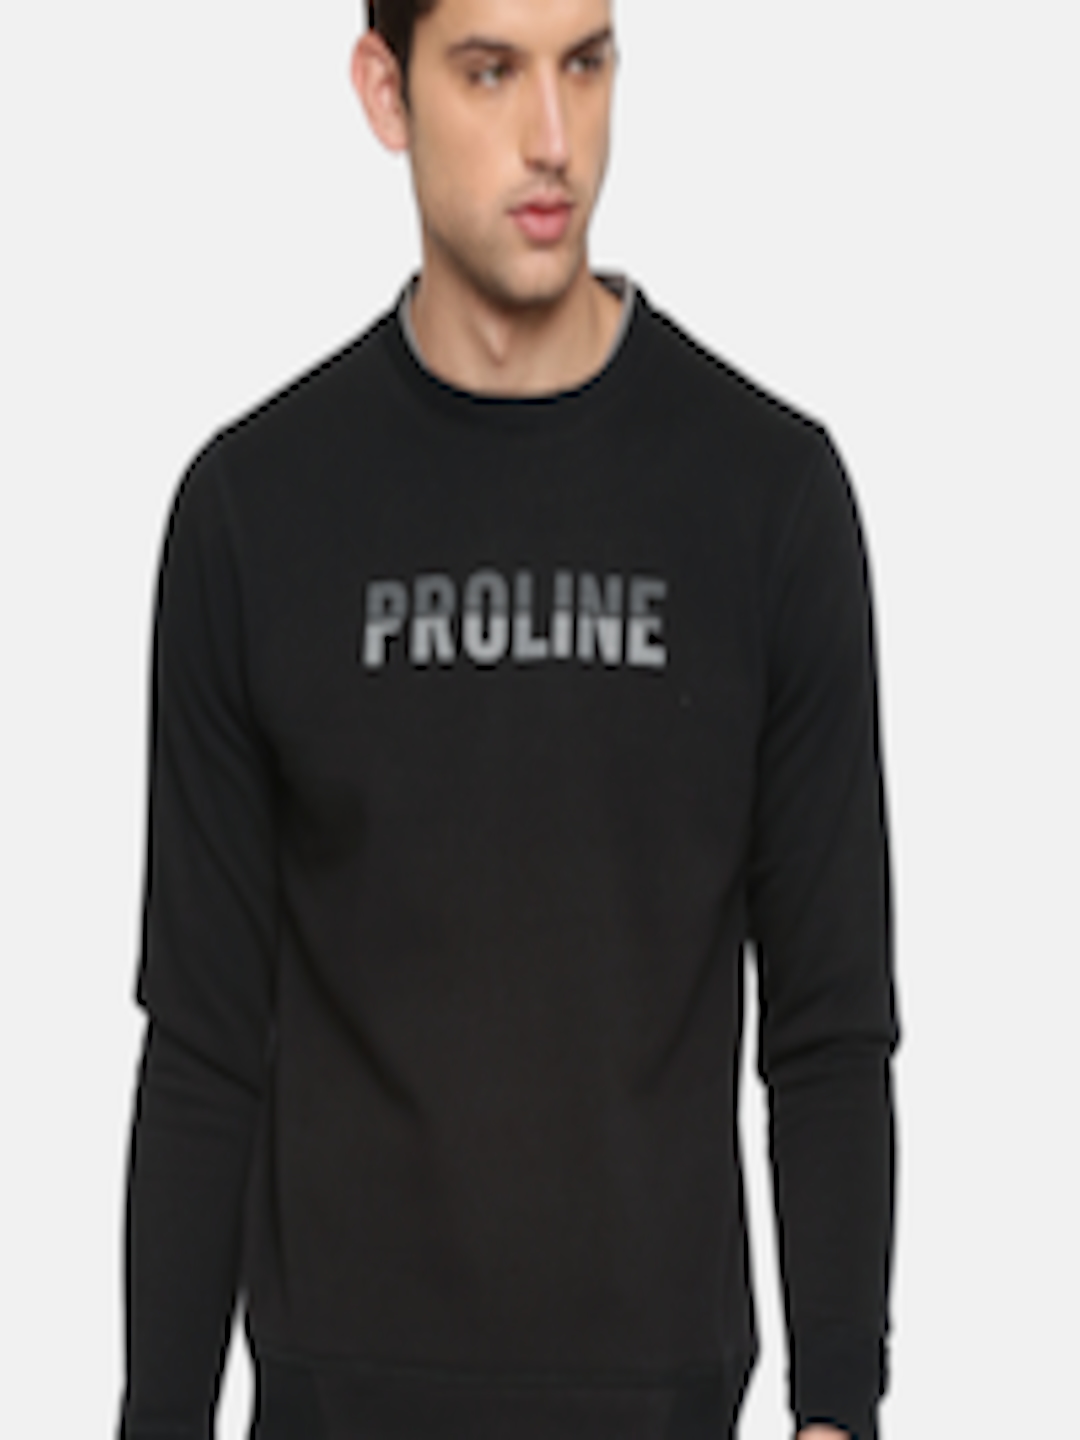 Buy Proline Active Men Black Printed Sweatshirt - Sweatshirts for Men ...